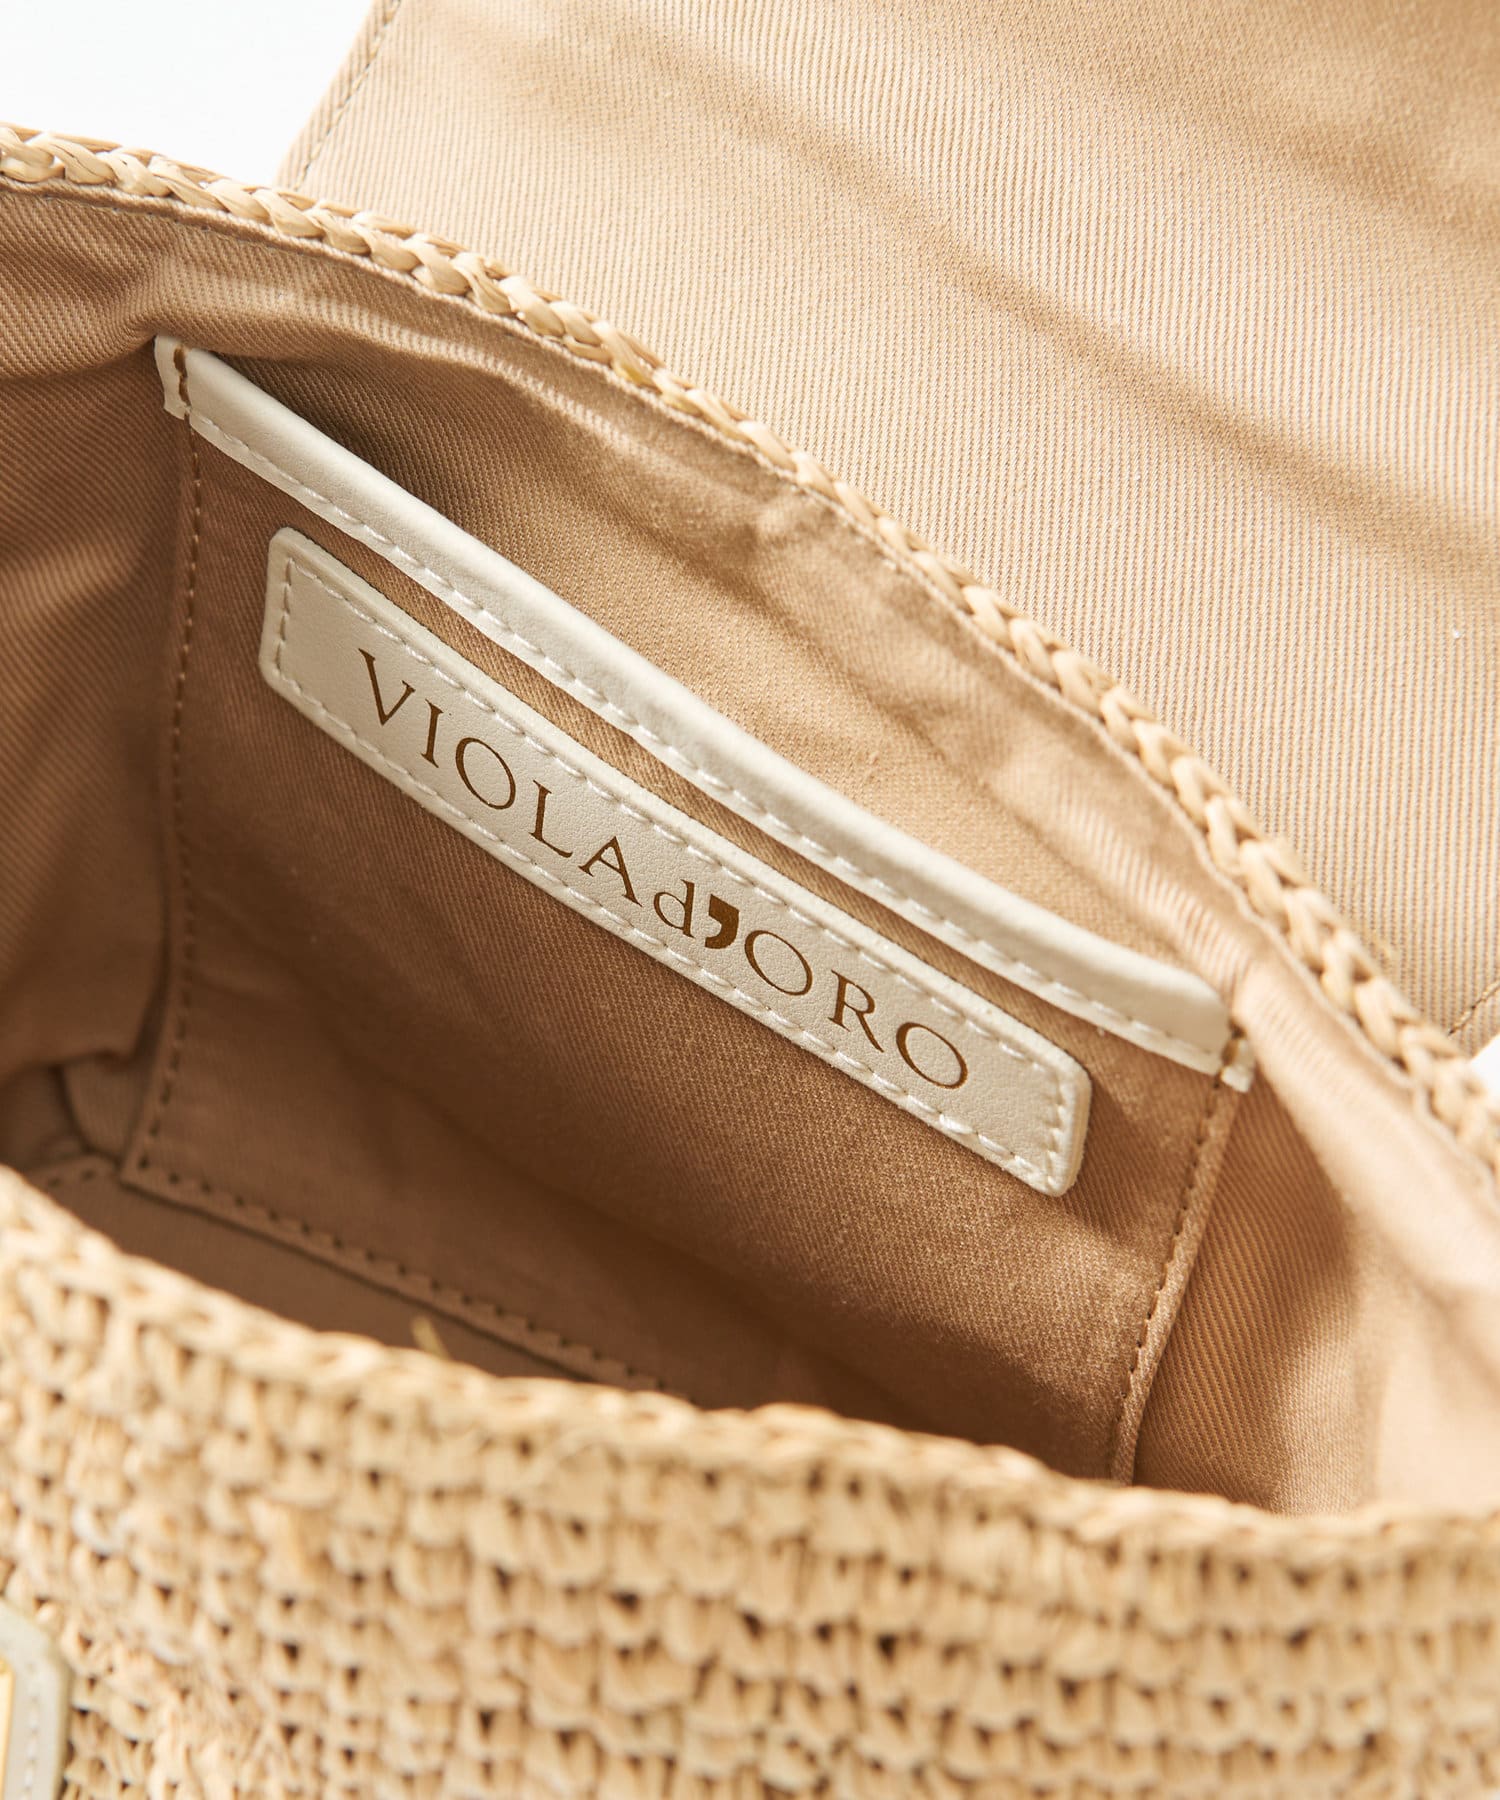 La boutique BonBon(ラブティックボンボン) ヴィオラドーロ/ラフィアトップハンドルストラップ付きバッグ